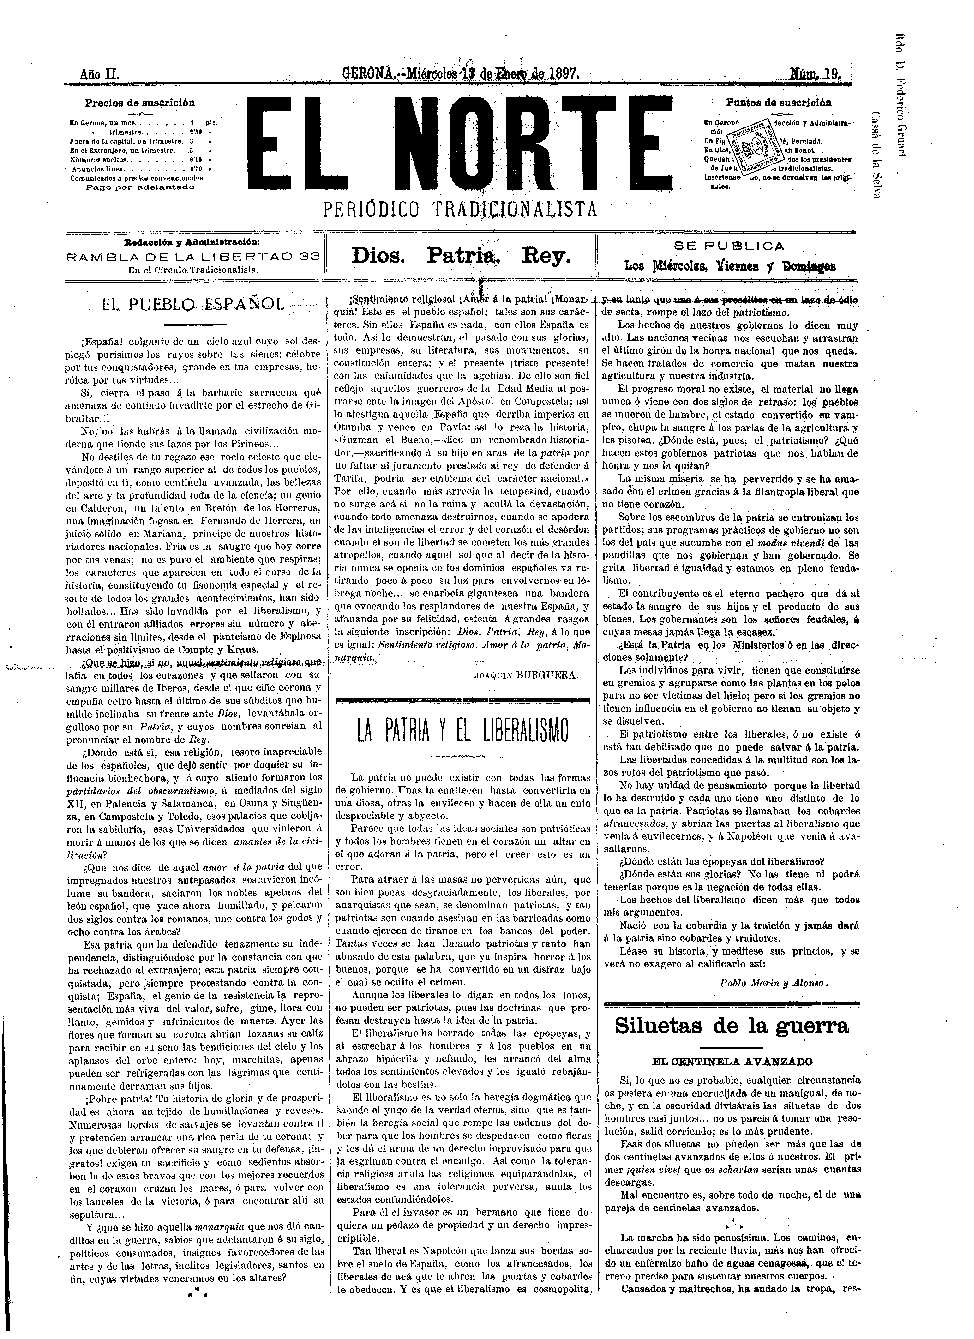 Norte, El. 13/1/1897. [Issue]